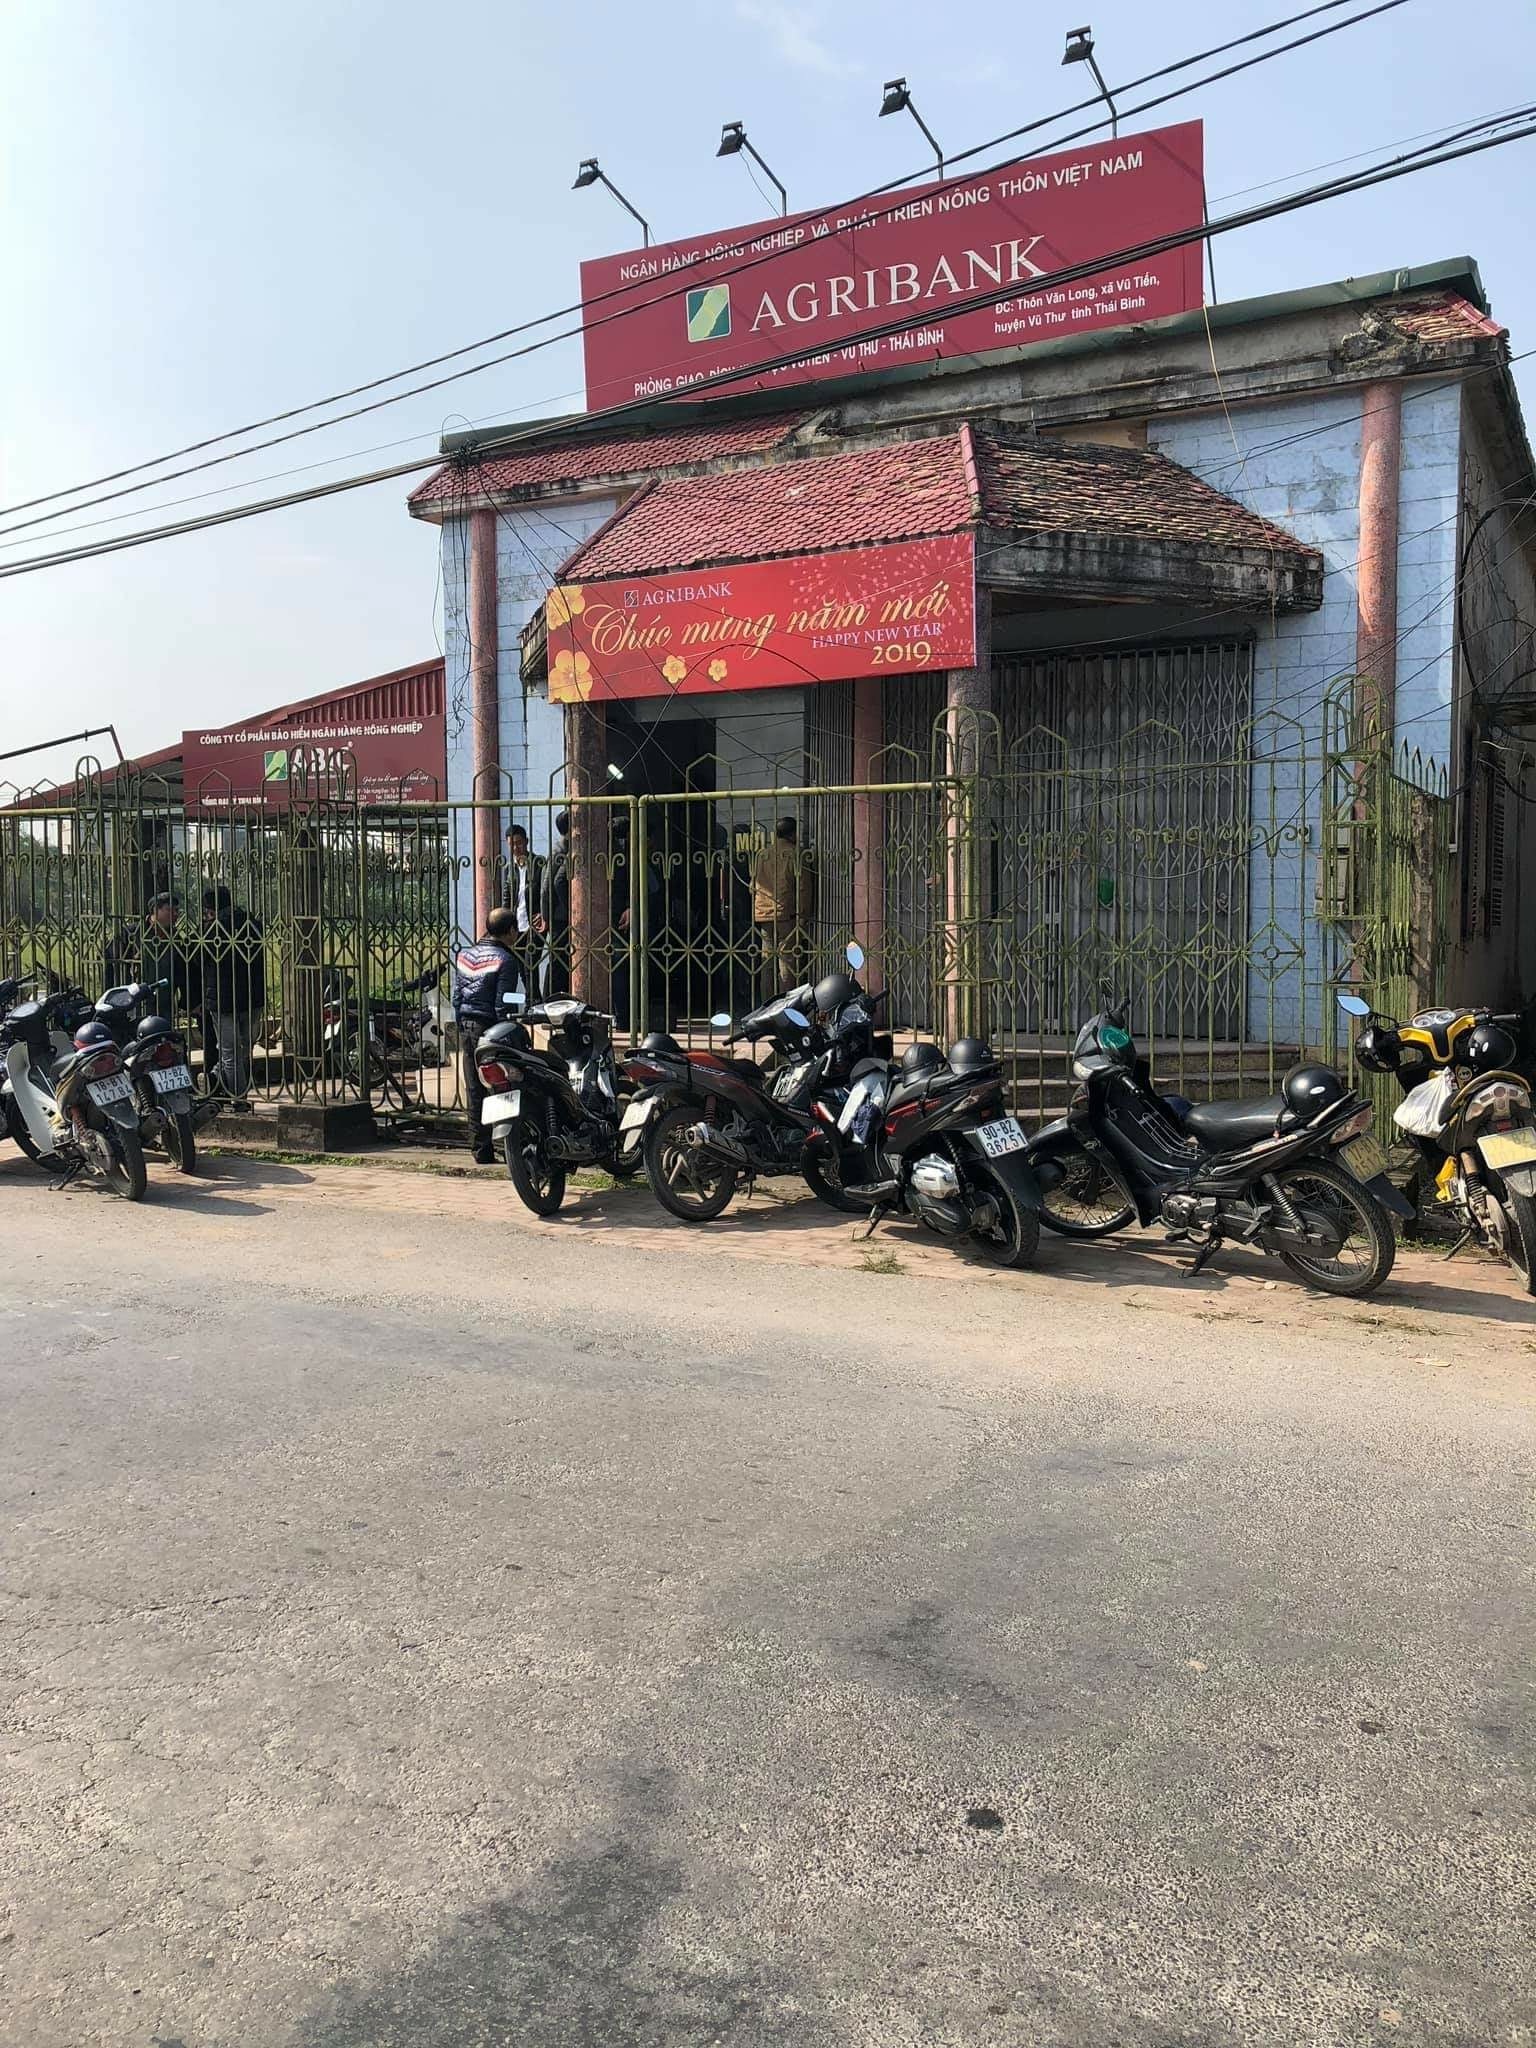 Bắt nghi phạm cướp ngân hàng ở Thái Bình, chém người truy đuổi - 1